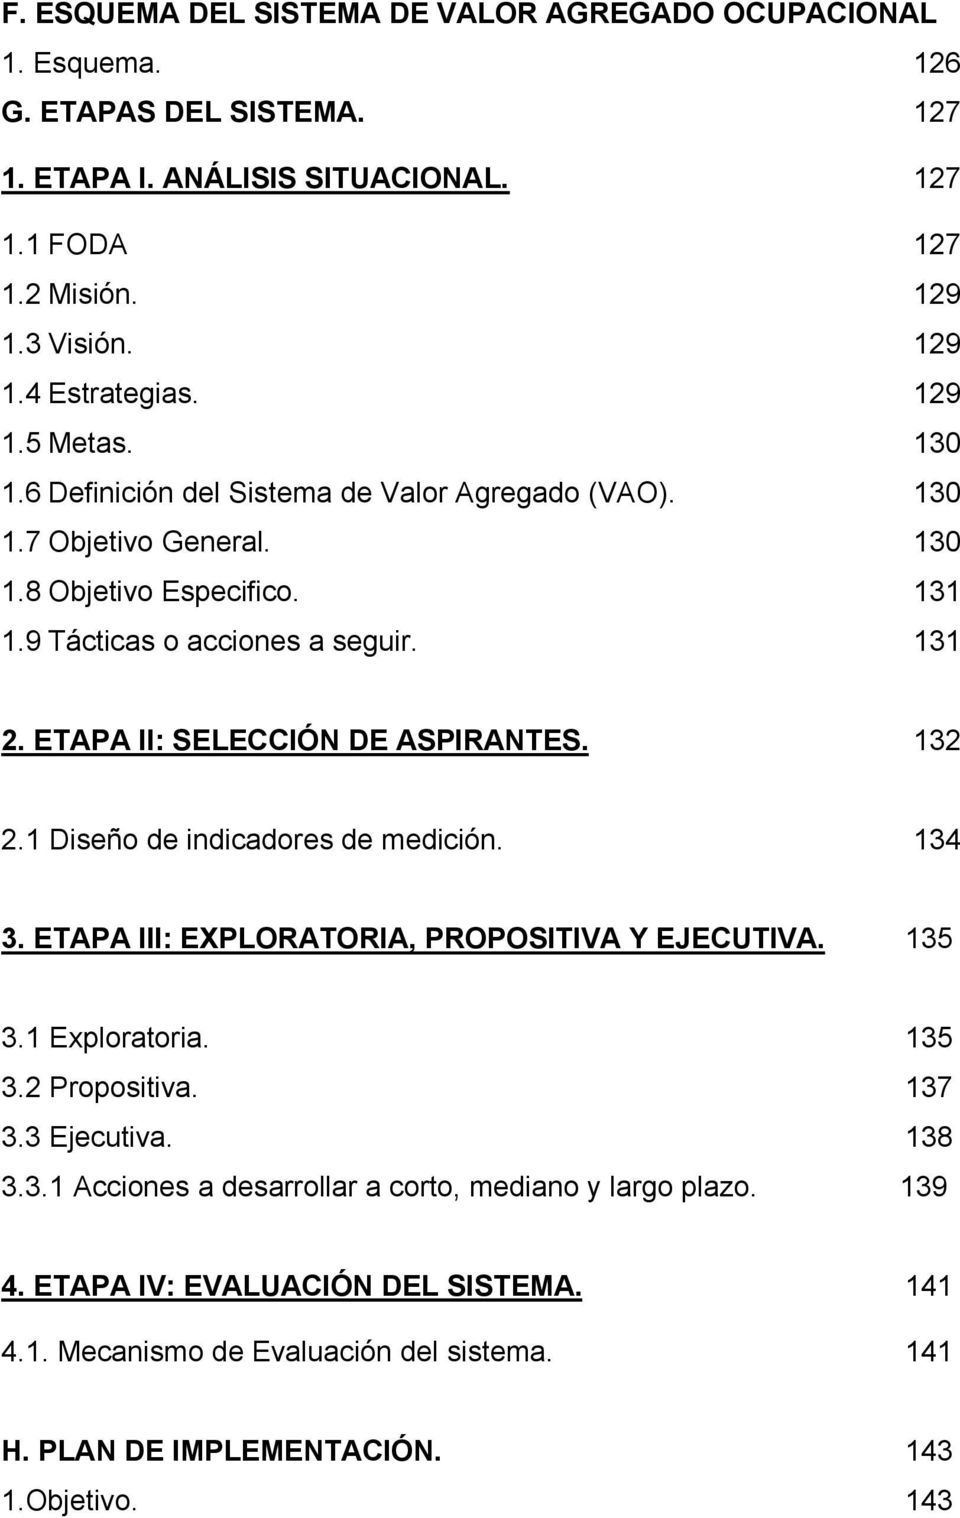 ETAPA II: SELECCIÓN DE ASPIRANTES. 132 2.1 Diseño de indicadores de medición. 134 3. ETAPA III: EXPLORATORIA, PROPOSITIVA Y EJECUTIVA. 135 3.1 Exploratoria. 135 3.2 Propositiva. 137 3.